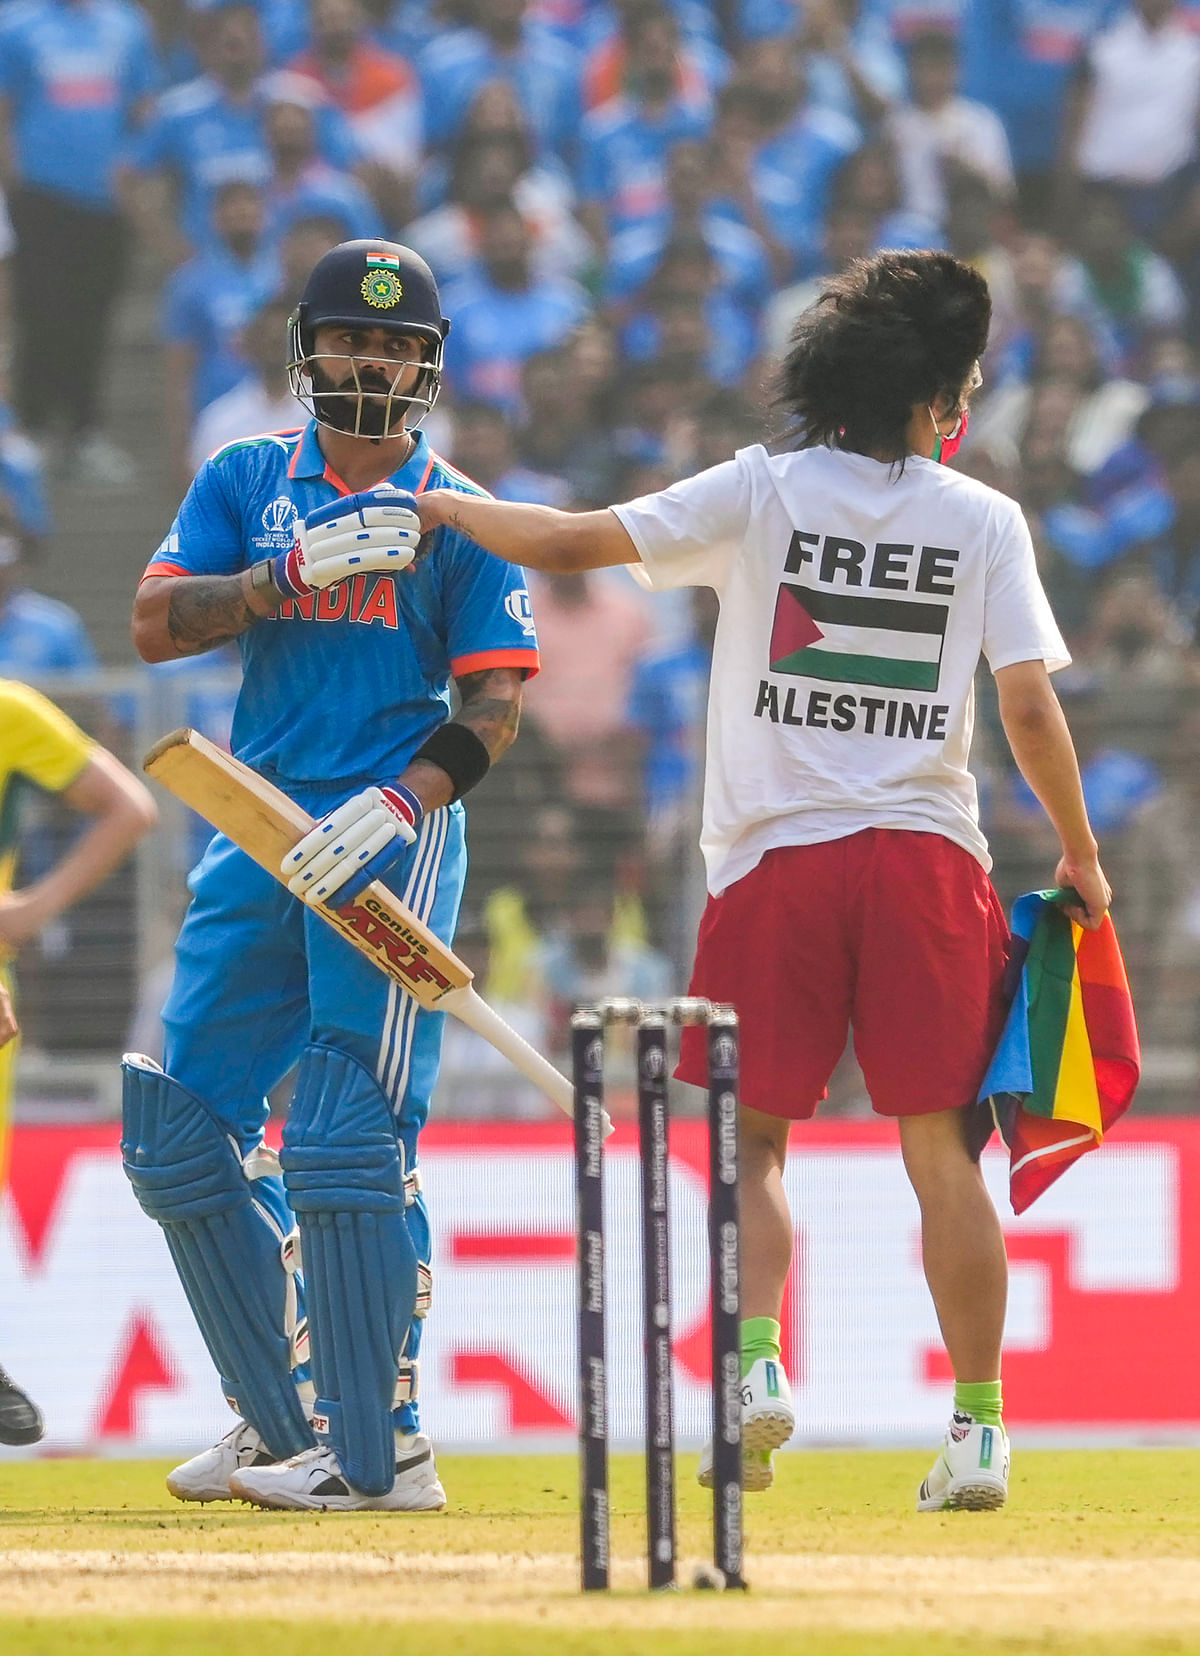 World Cup Final: भारत-ऑस्ट्रेलिया के बीच वर्ल्ड कप फाइनल के दौरान एक फिलिस्तीनी समर्थक नरेंद्र मोदी स्टेडियम में मैदान के अंदर घुस गया.